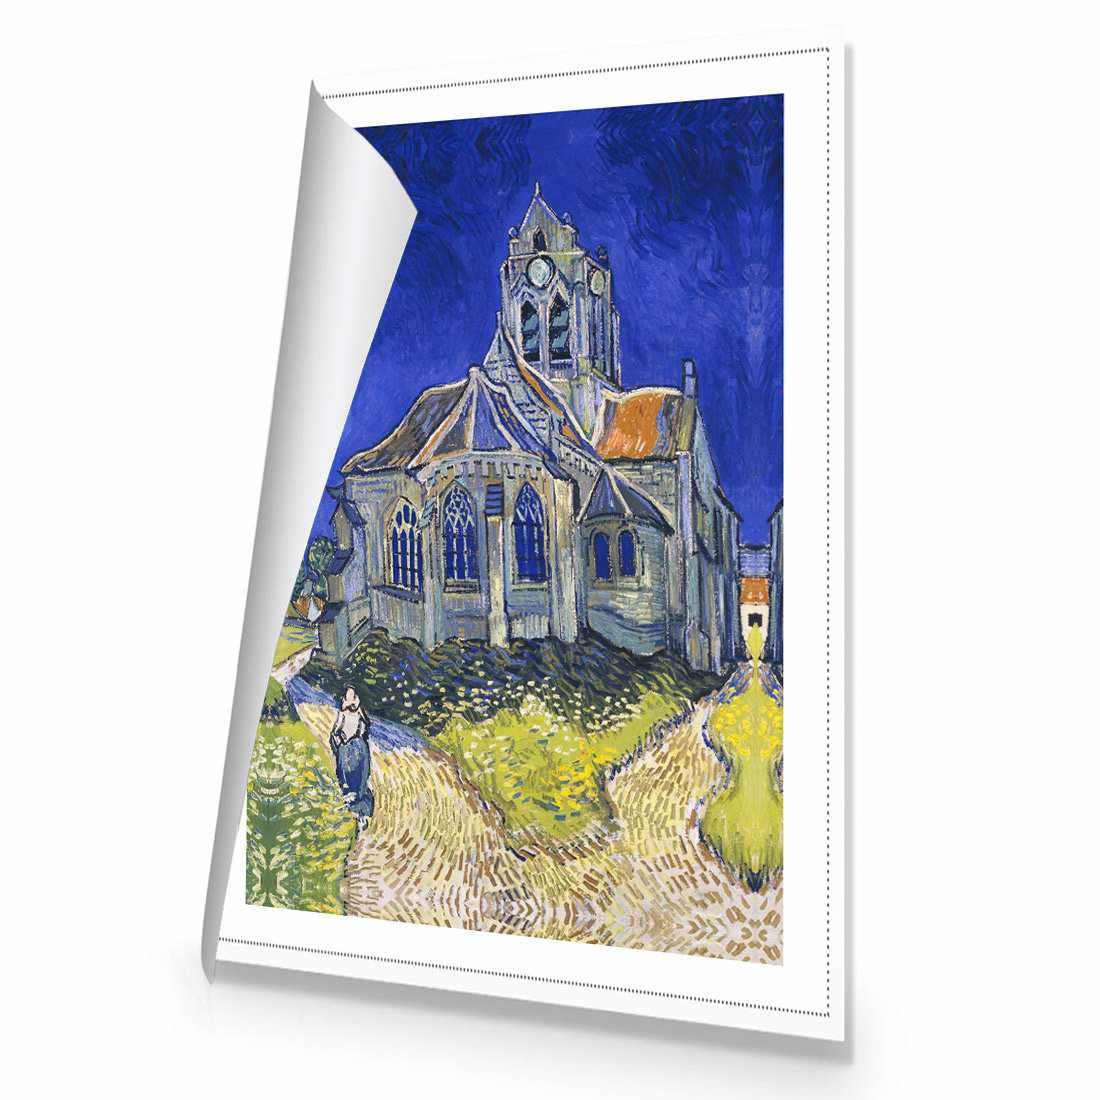 The Church At Auvers - Van Gogh Canvas Art-Canvas-Wall Art Designs-45x30cm-Rolled Canvas-Wall Art Designs